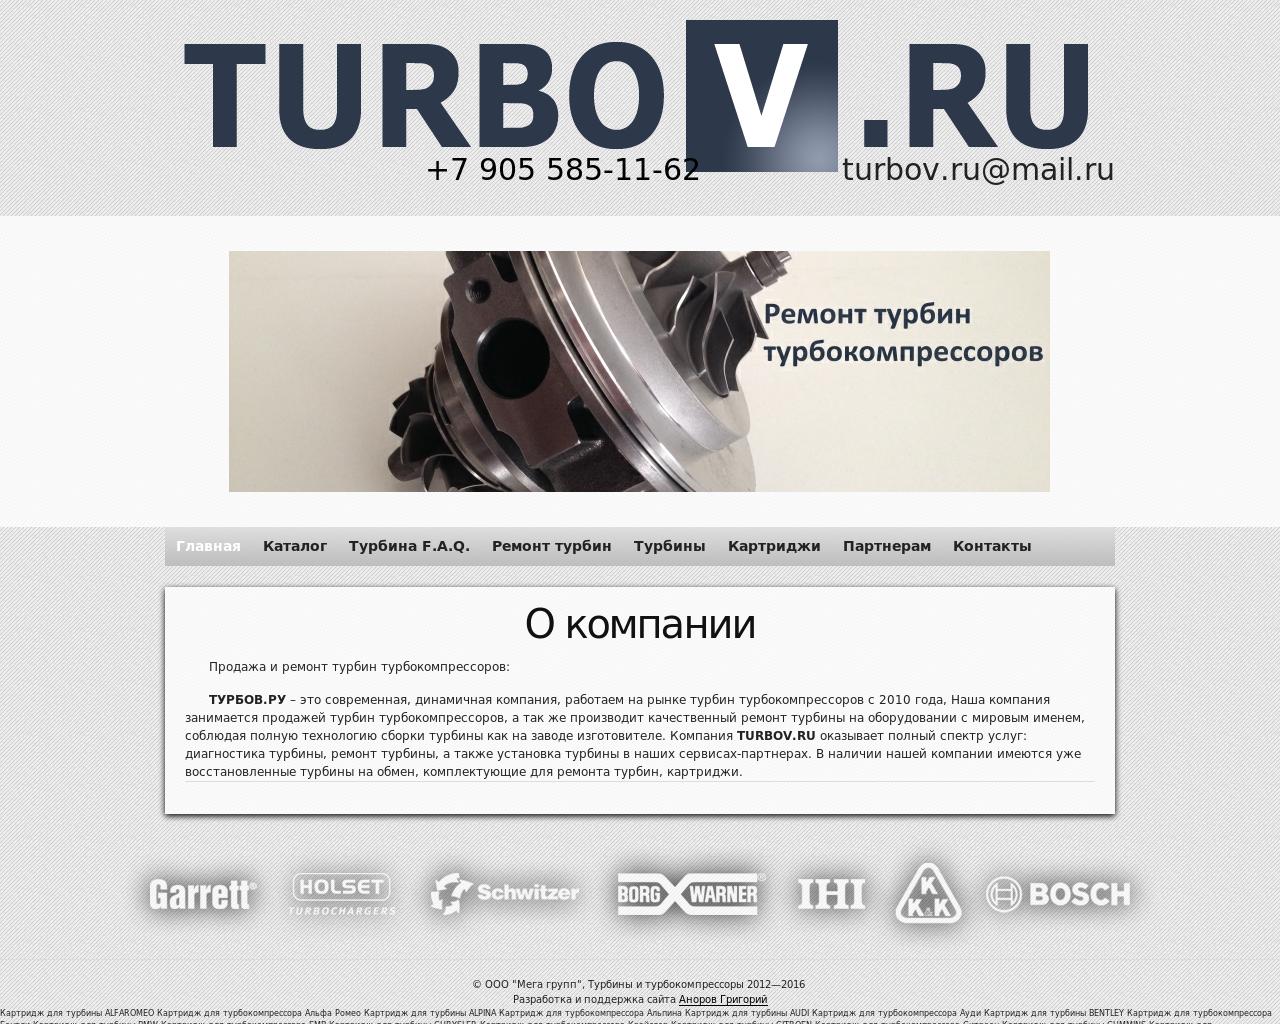 Изображение сайта turbov.ru в разрешении 1280x1024